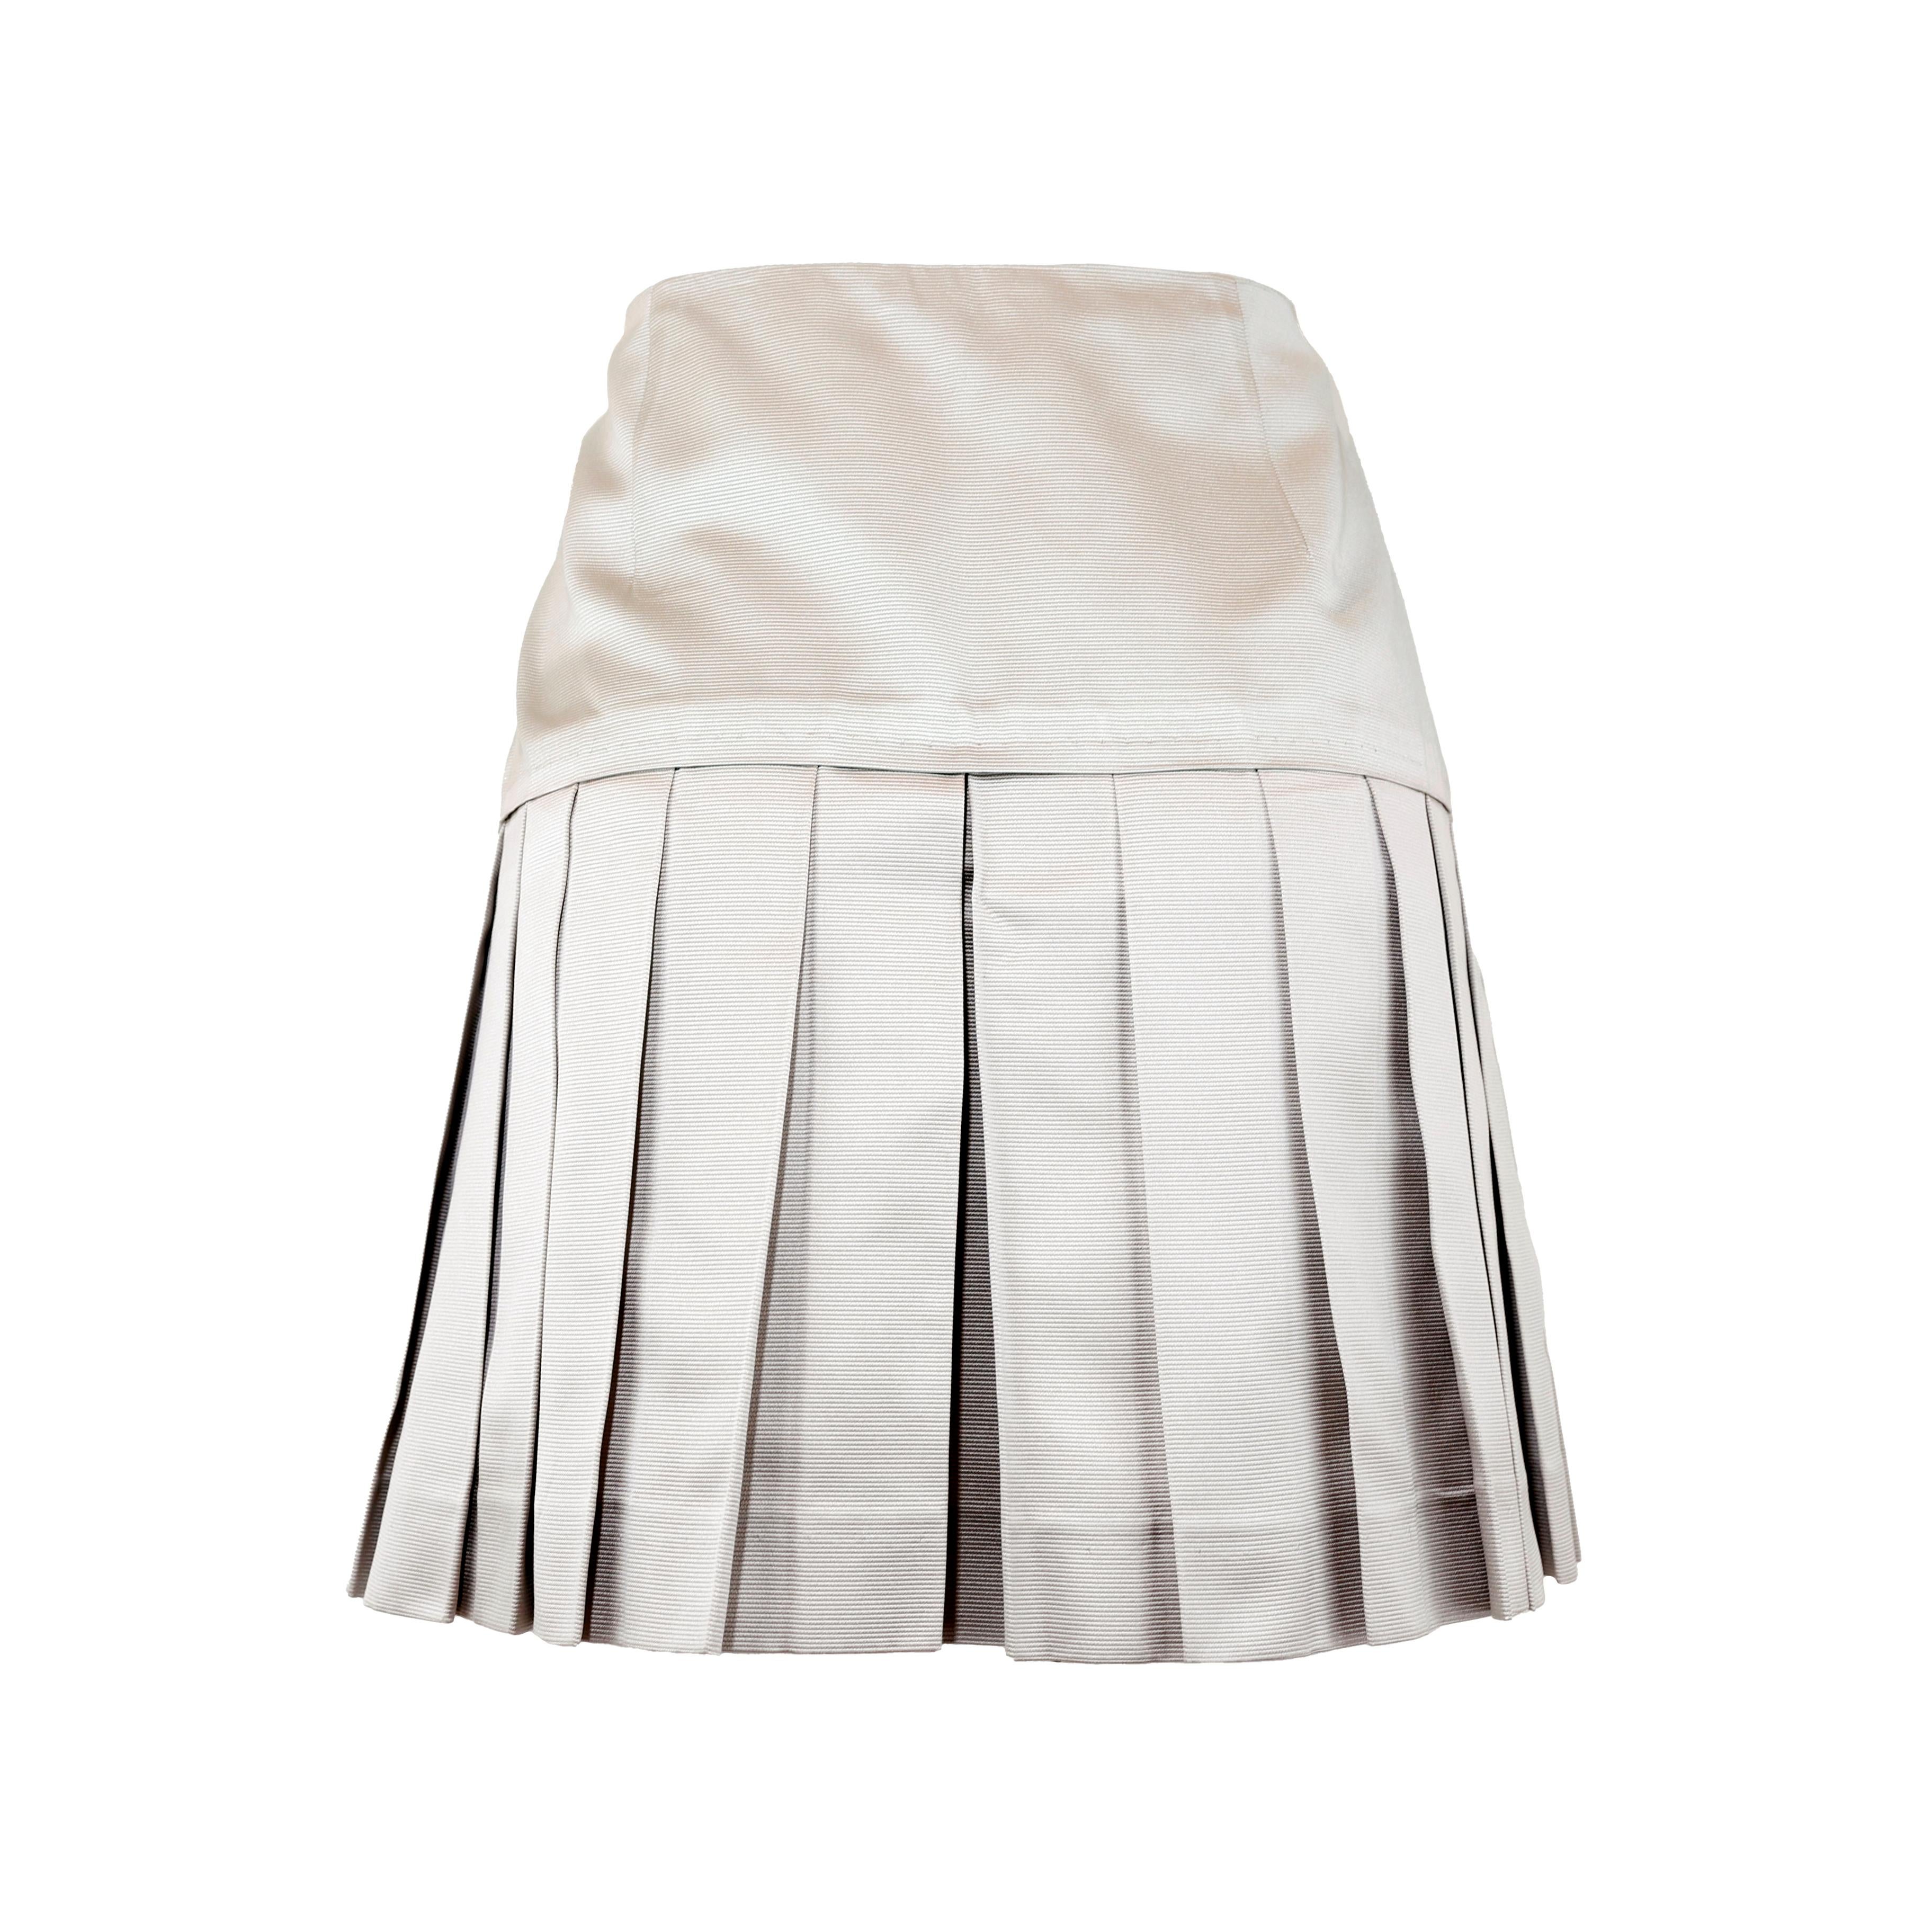 Mini jupe Miu Miu en soie, coloris gris. Taille 40 IT.

Condit :
Excellent.